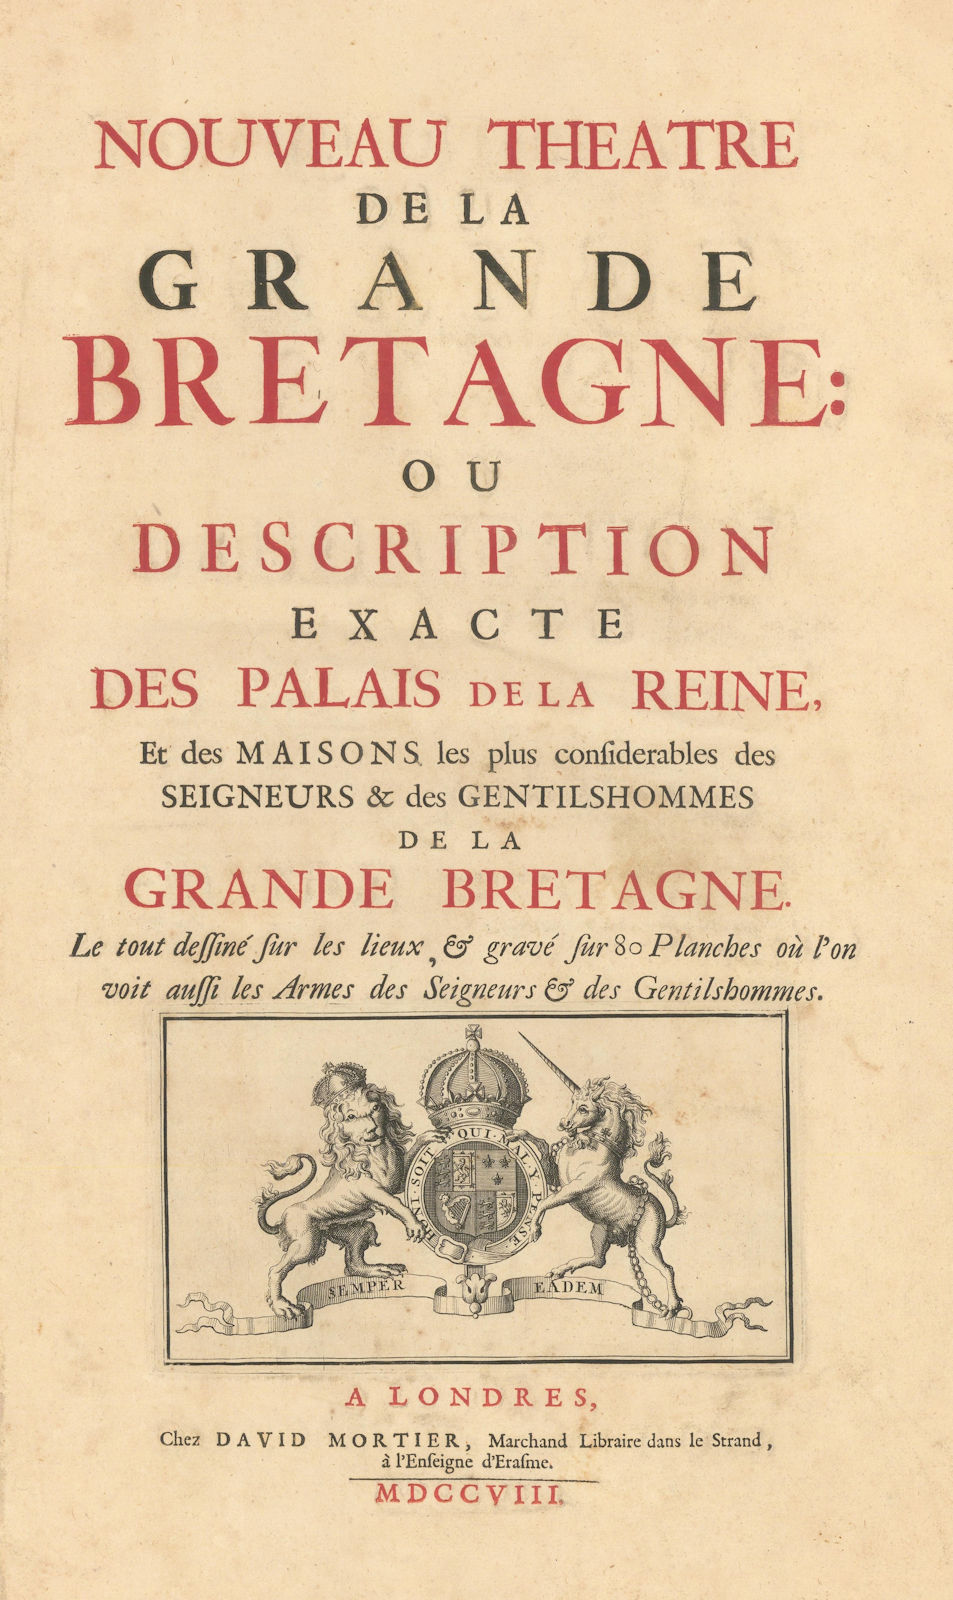 Associate Product Nouveau Theatre de la Grande Bretagne. Kip Kynff Mortier. Title page 1709